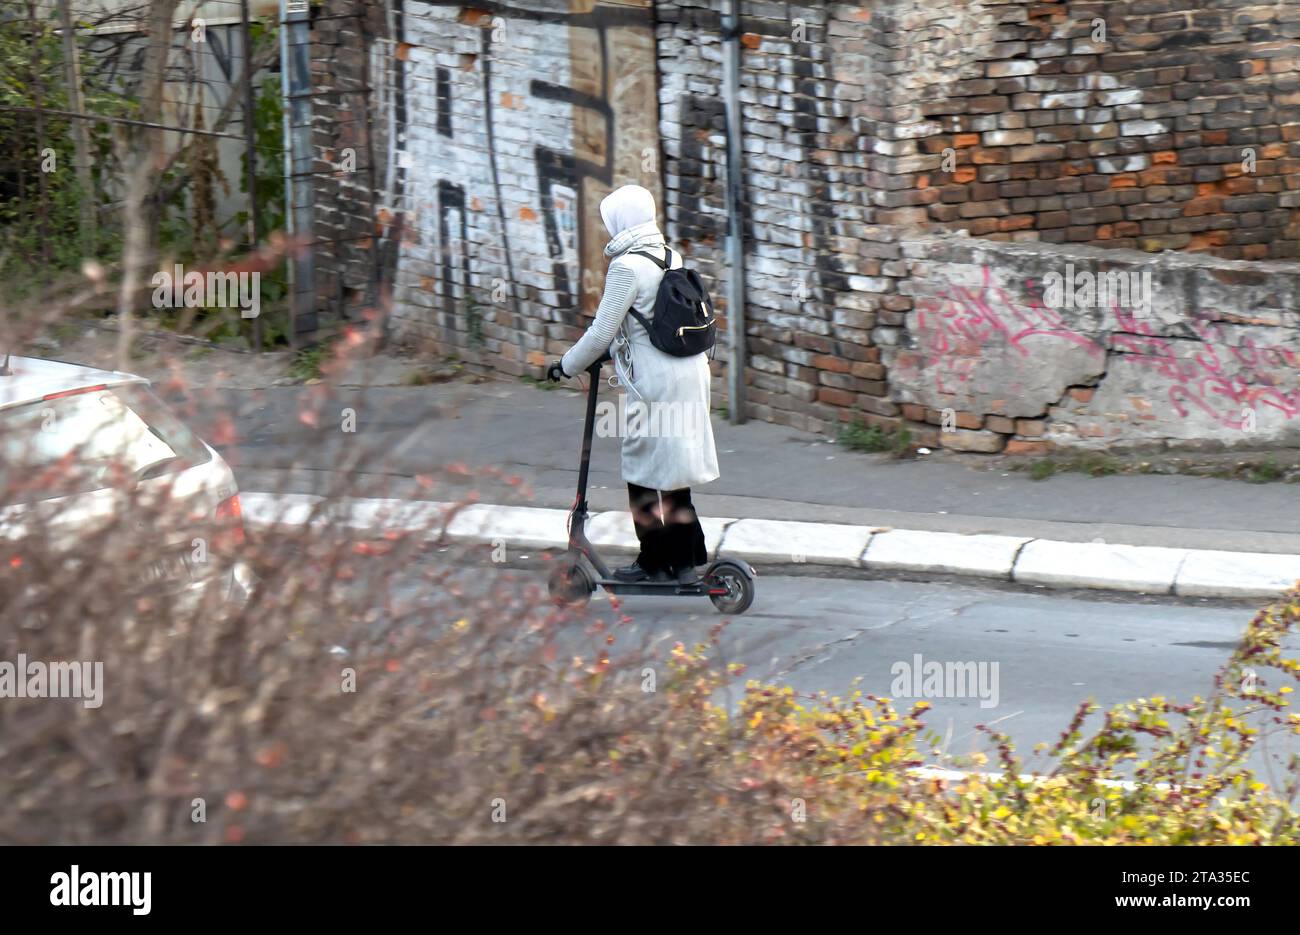 Belgrade, Serbie - 02 décembre 2020 : une femme conduit un scooter électrique dans une rue de banlieue, en hiver, par derrière Banque D'Images